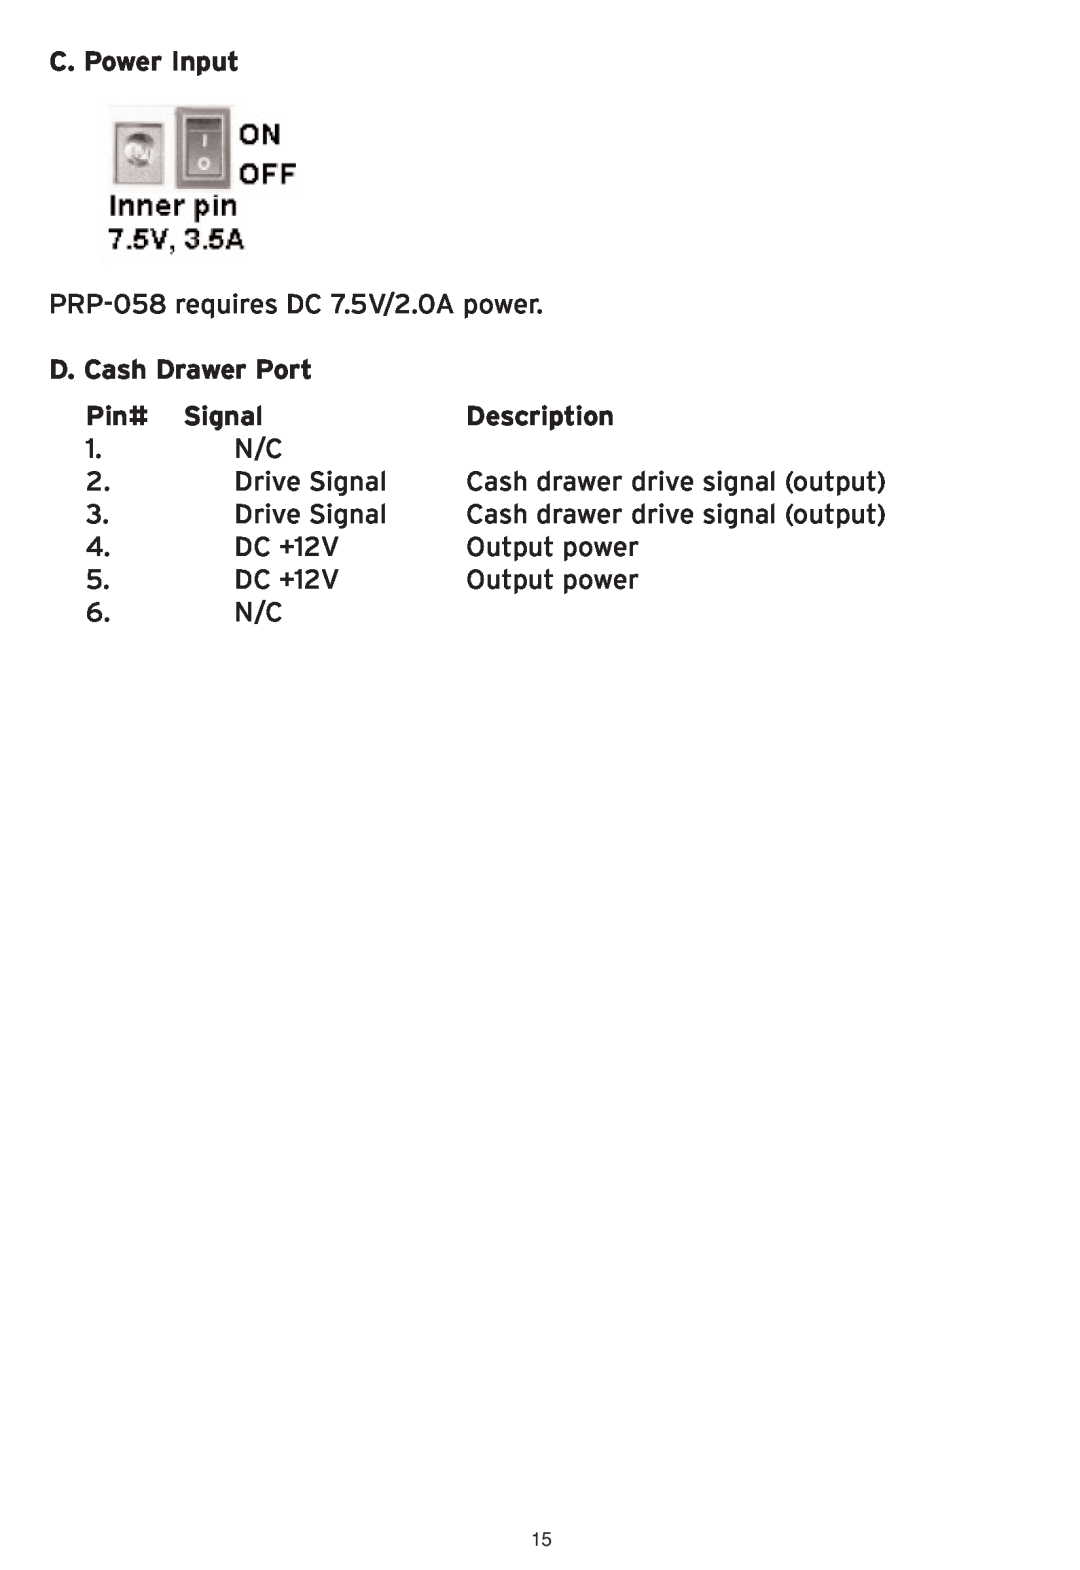 SMC Networks SMCWHS-POS manual C. Power Input, D. Cash Drawer Port, Pin# Signal, Description 